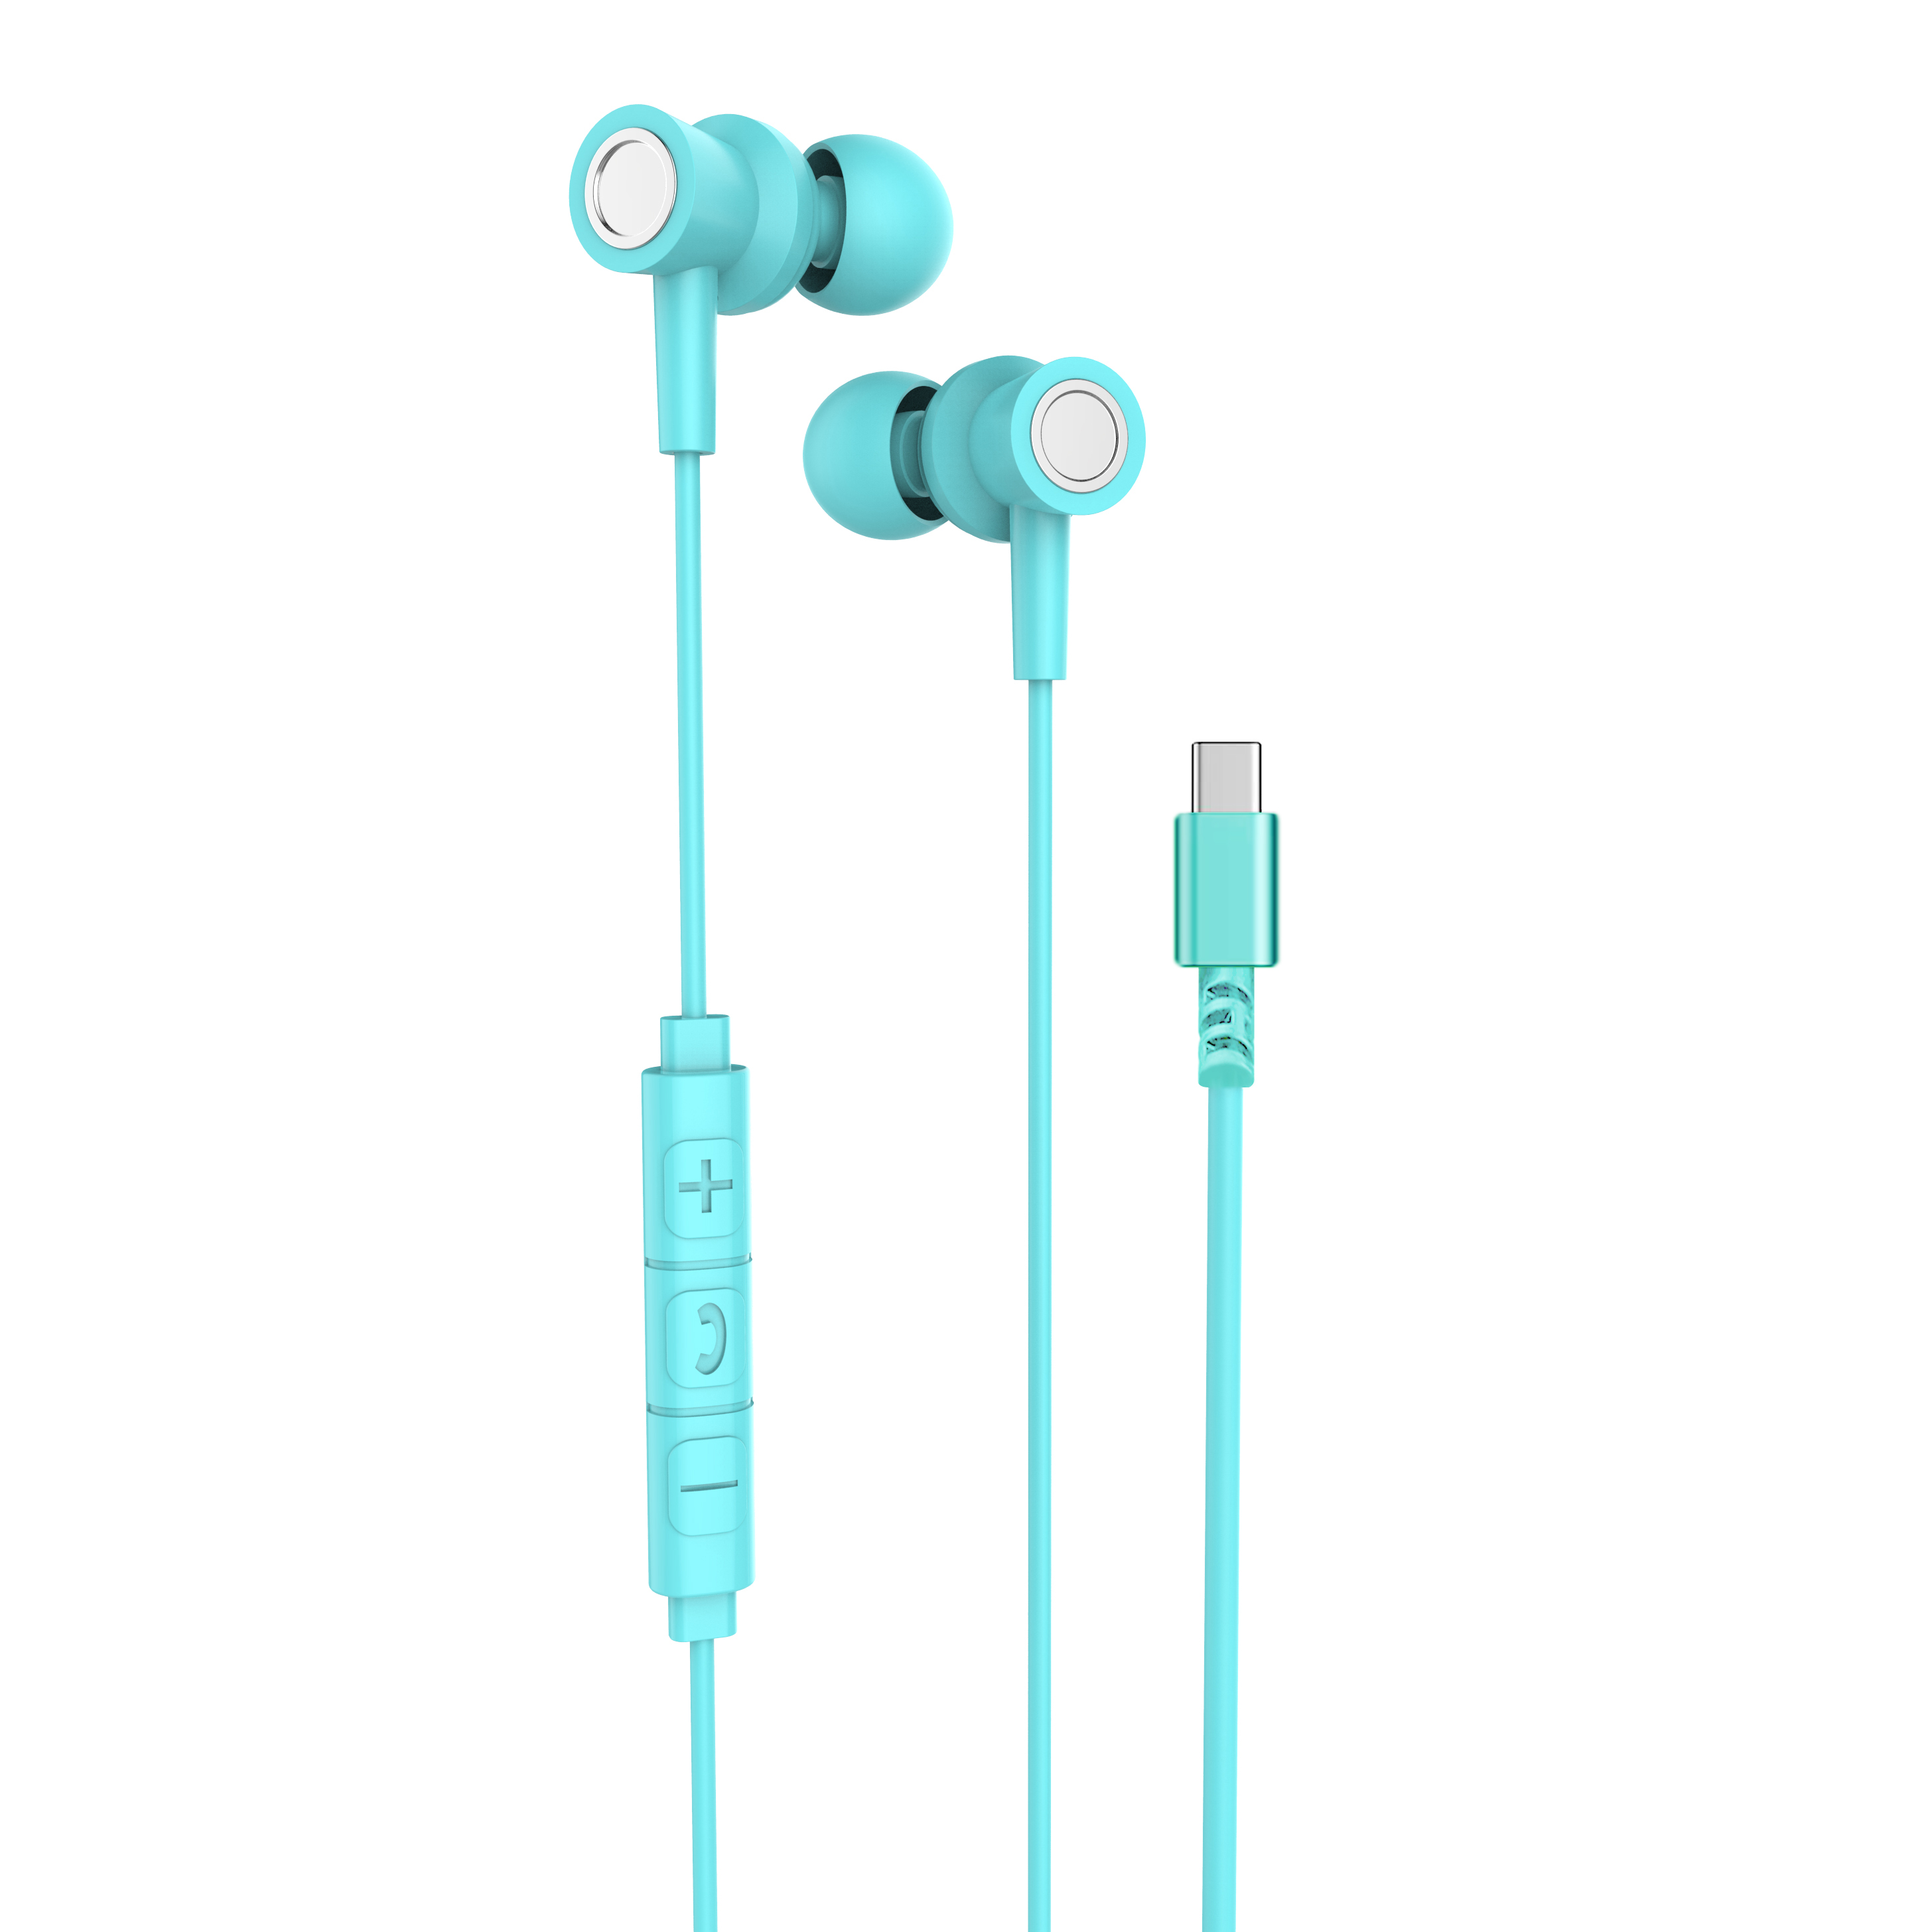 R17彩色手机线控耳机有线耳机 活塞入耳 带包装出货 安卓iOS系统通用详情图4